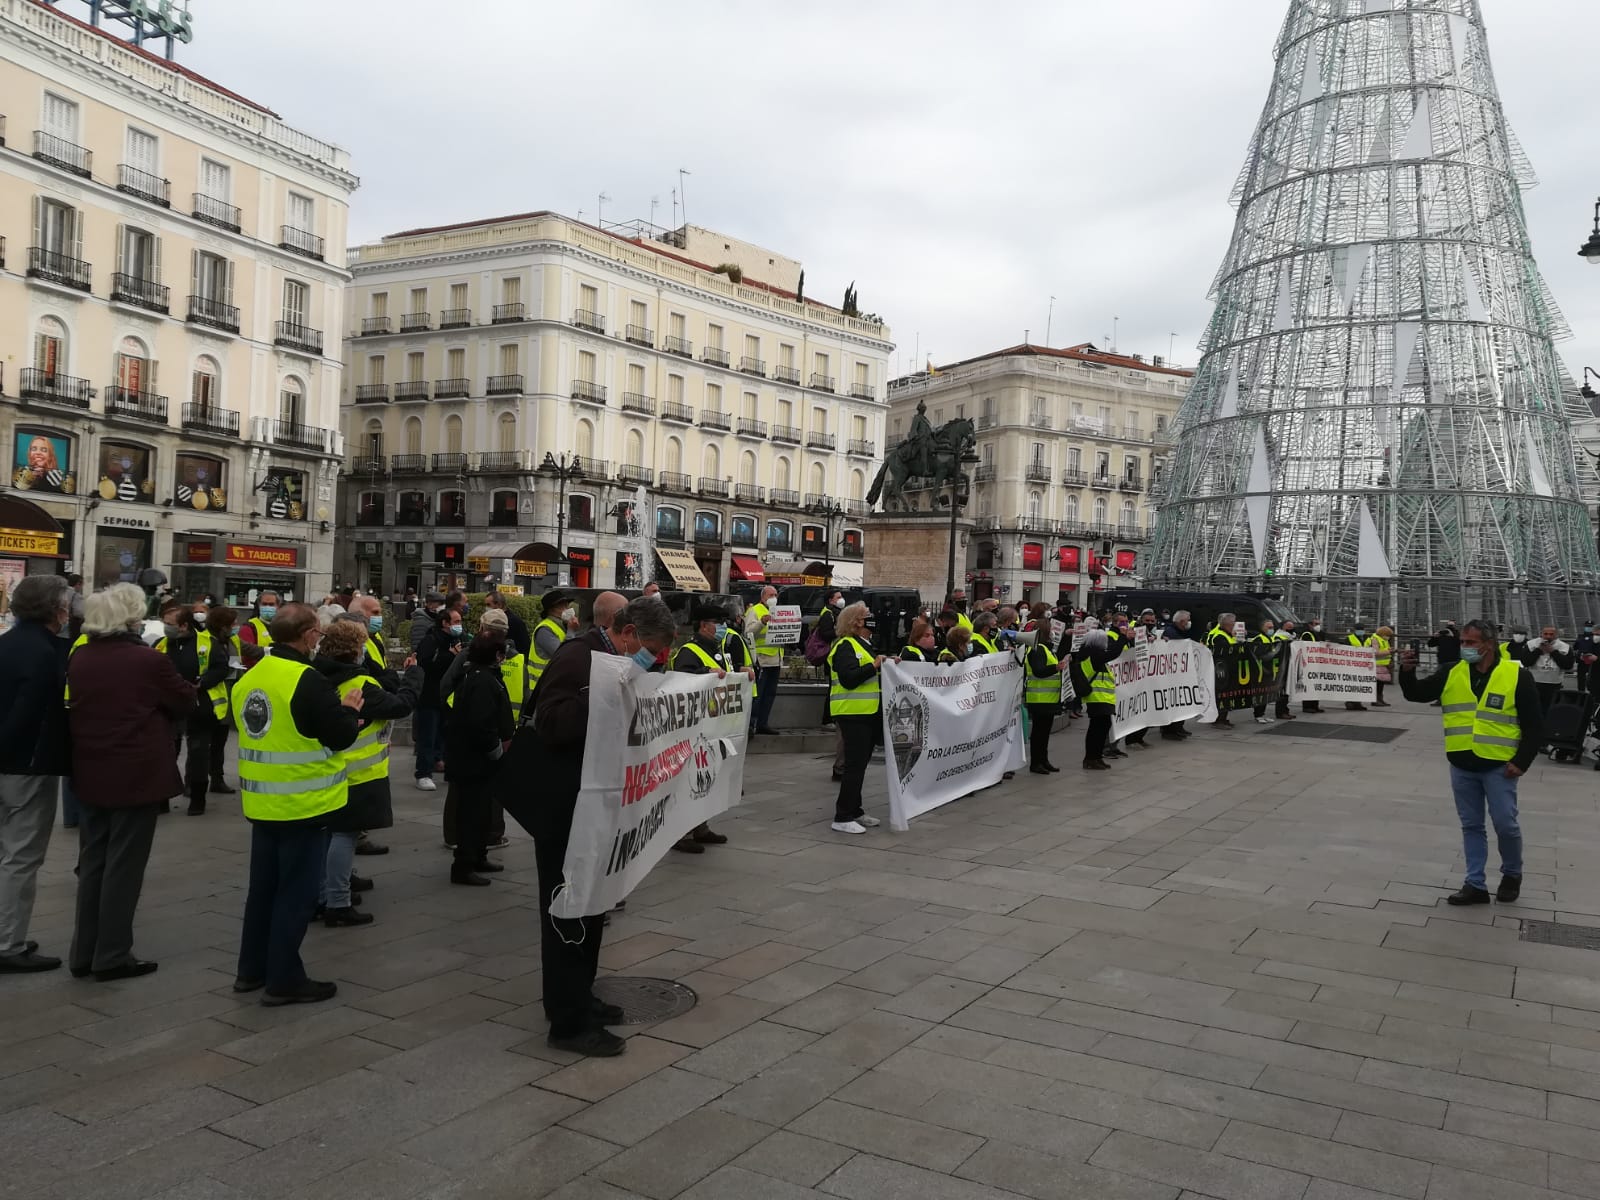 Los pensionistas, descontentos con el Pacto de Toledo: "Con 400 euros no te da ni para el alquiler"